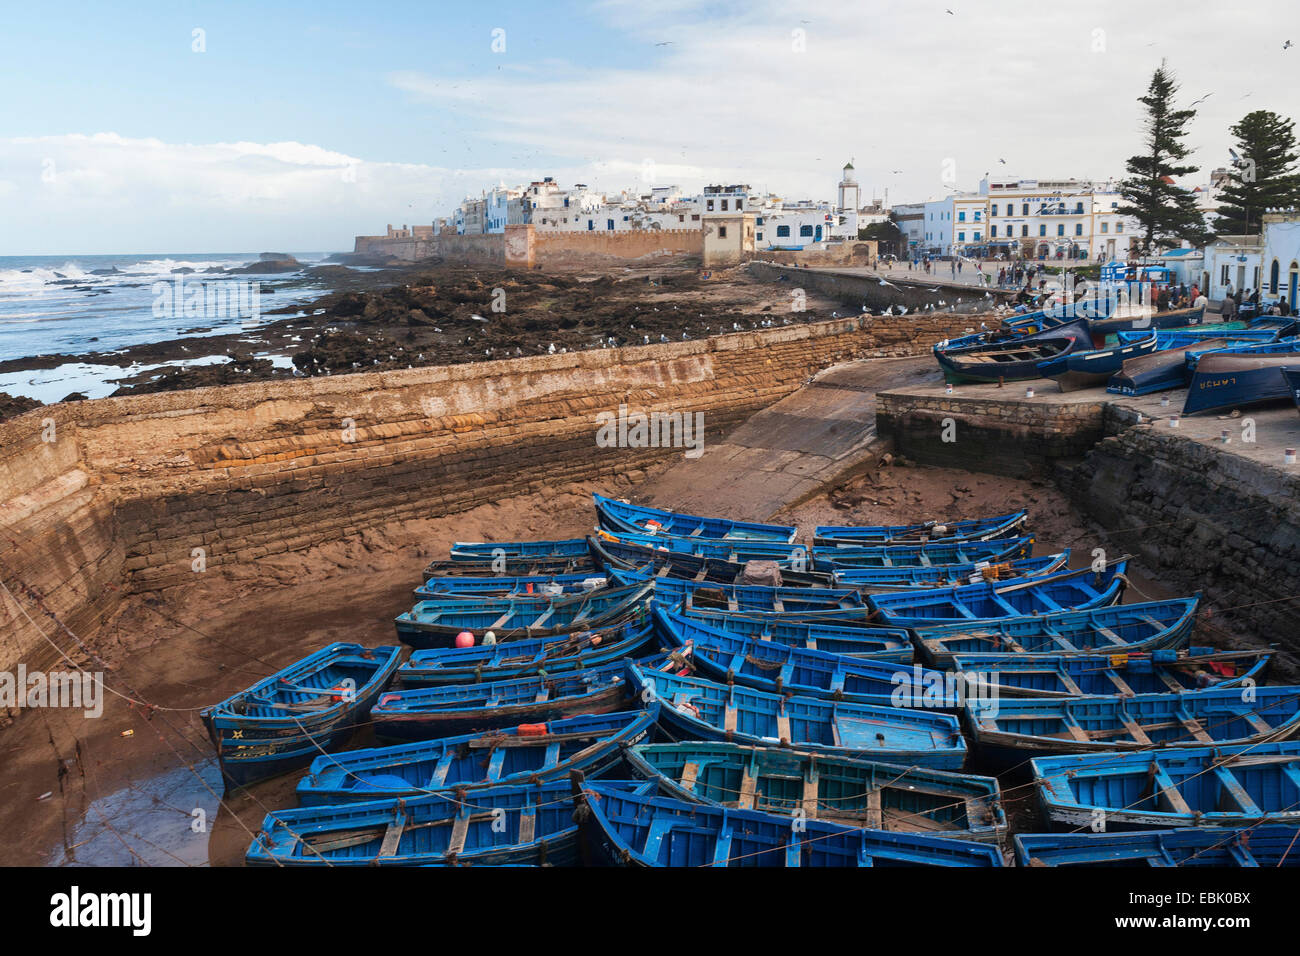 Bateaux de pêche dans le port, le Maroc, Essaouira Banque D'Images